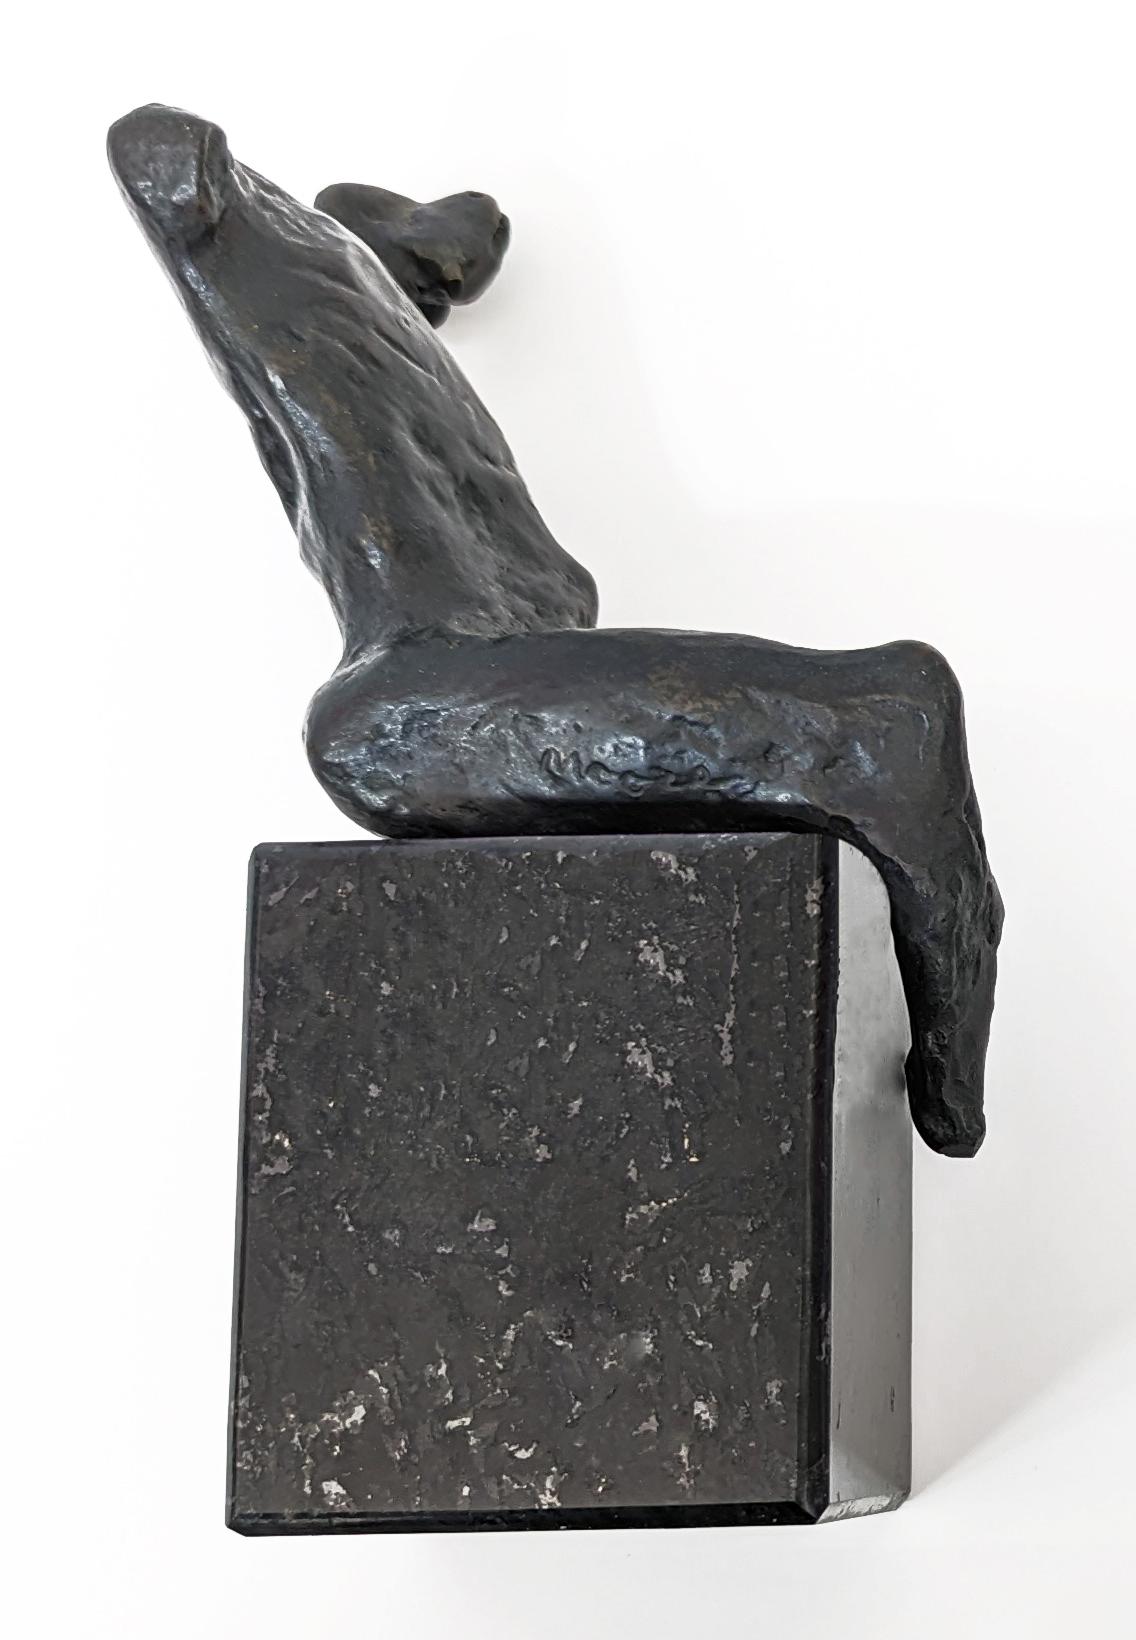 Bronzeskulptur mit Patina am Sockel. Eingeschnittenes 